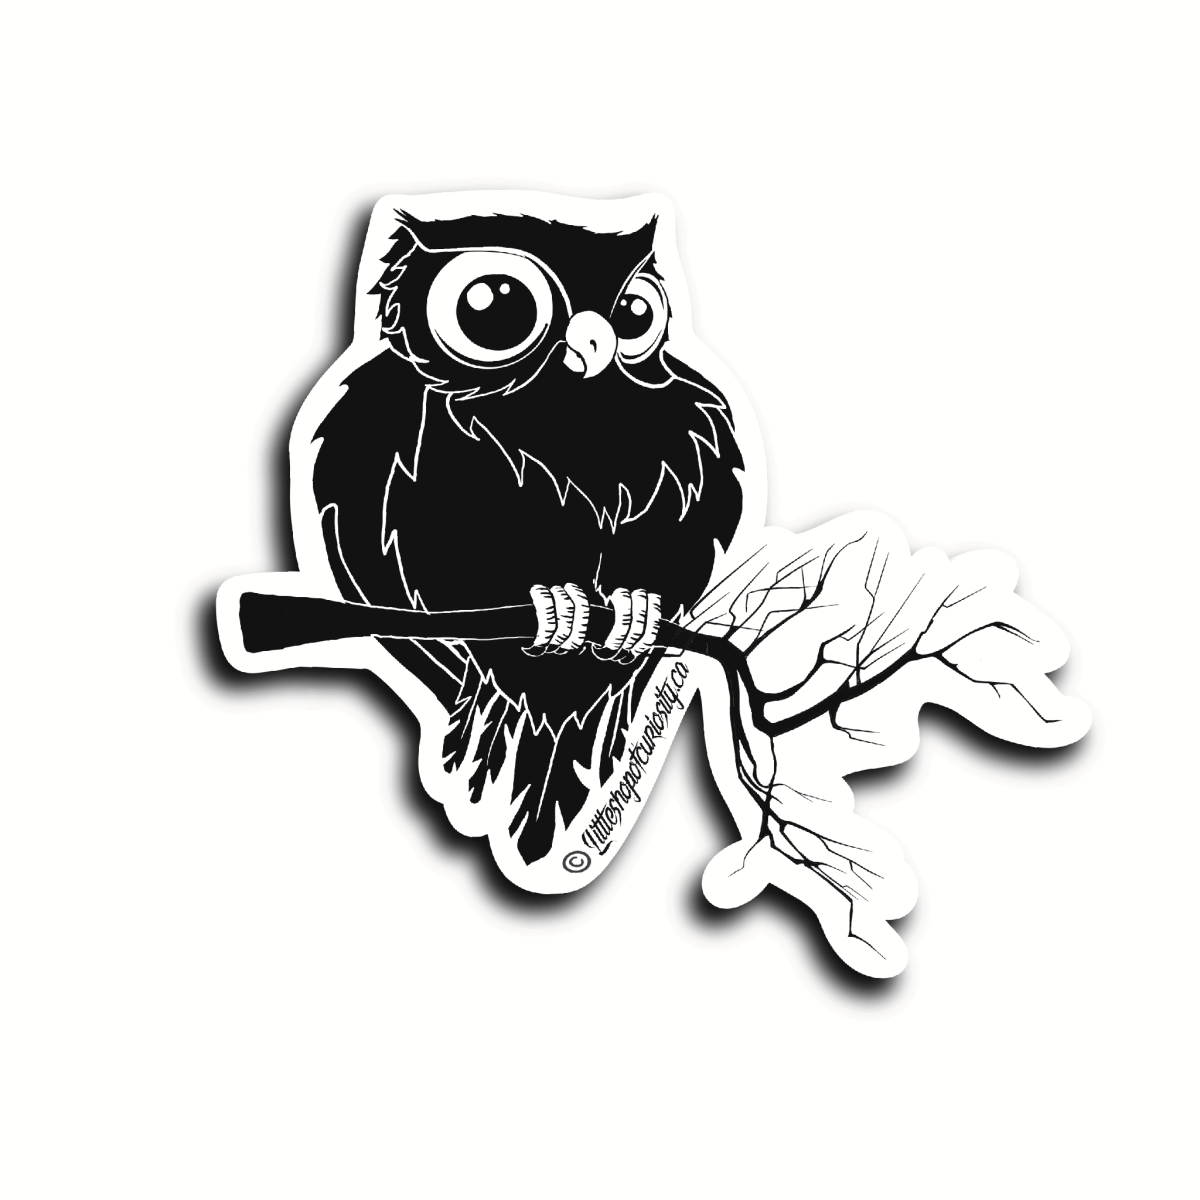 Owl Sticker - Black & White Sticker - Little Shop of Curiosity